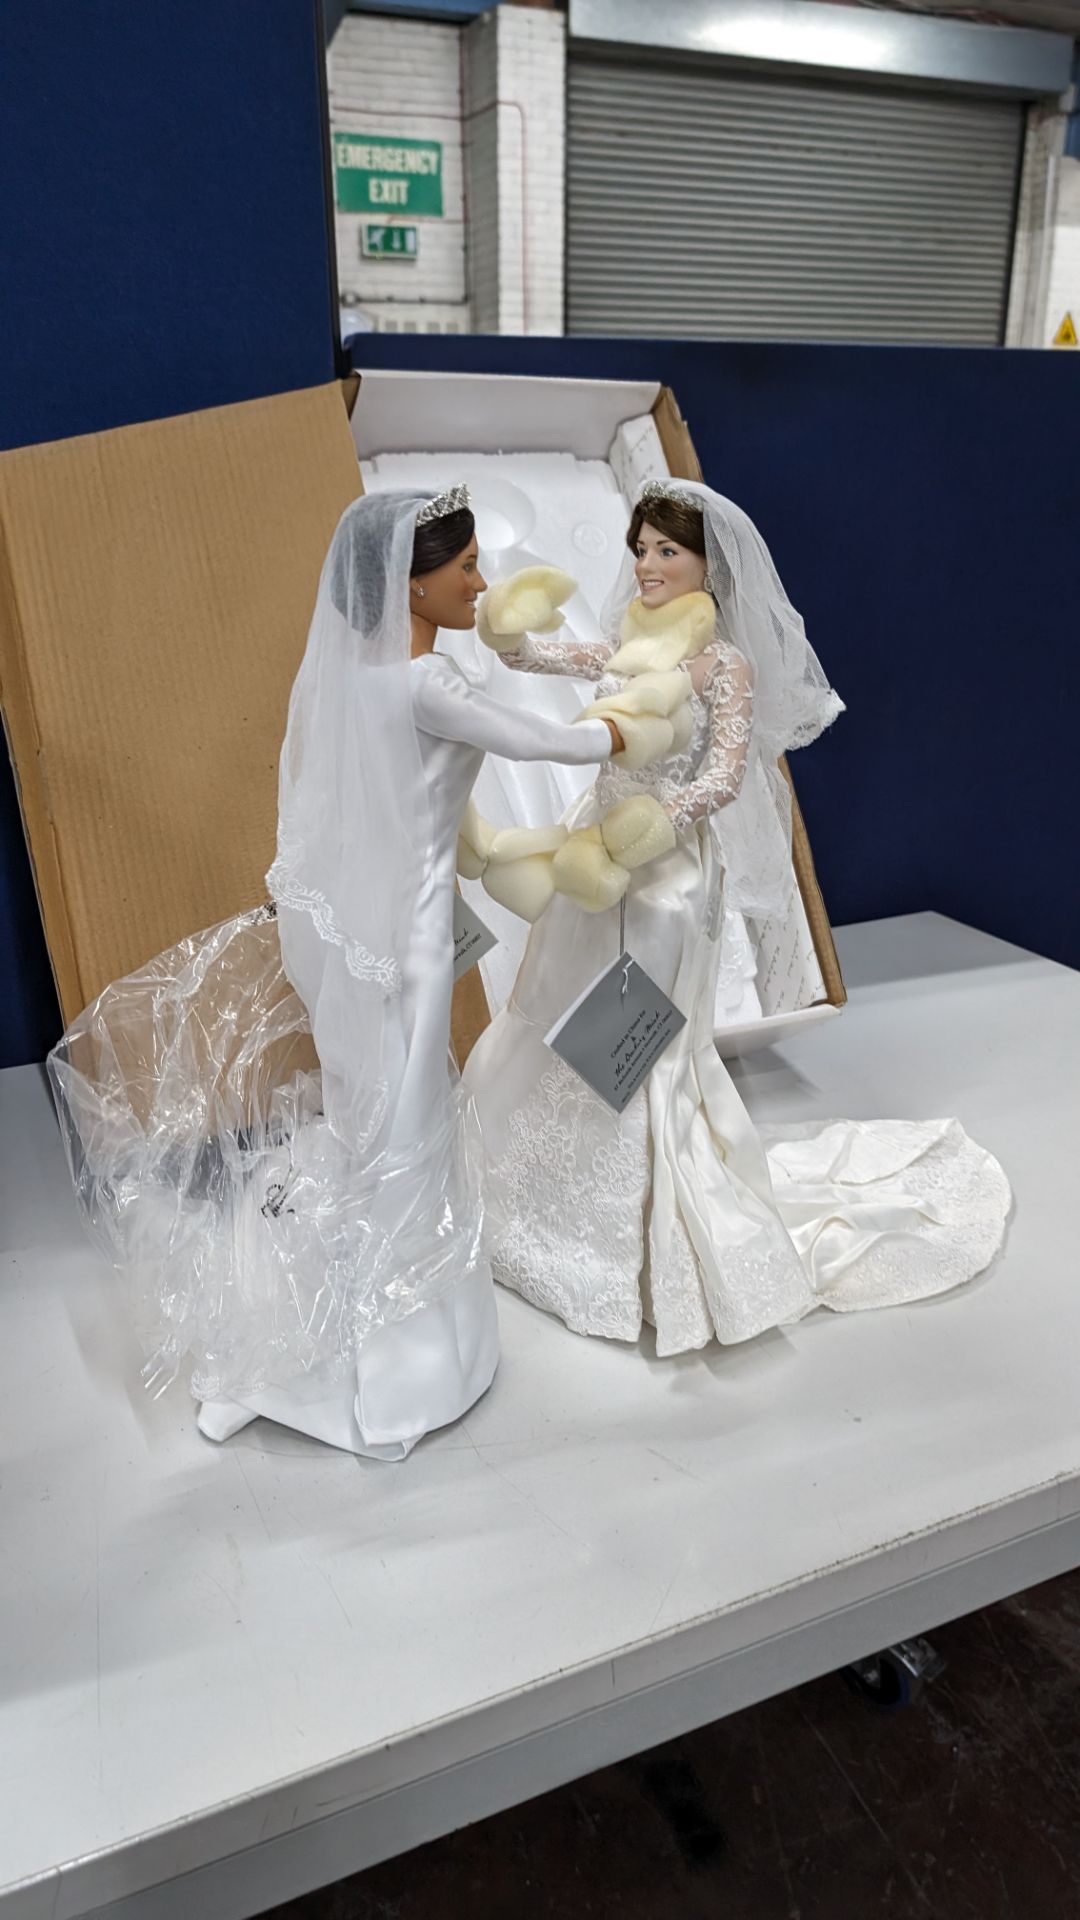 3 off Danbury Mint Meghan & Kate bride dolls (2 off Meghan & 1 off Kate) - Image 3 of 8